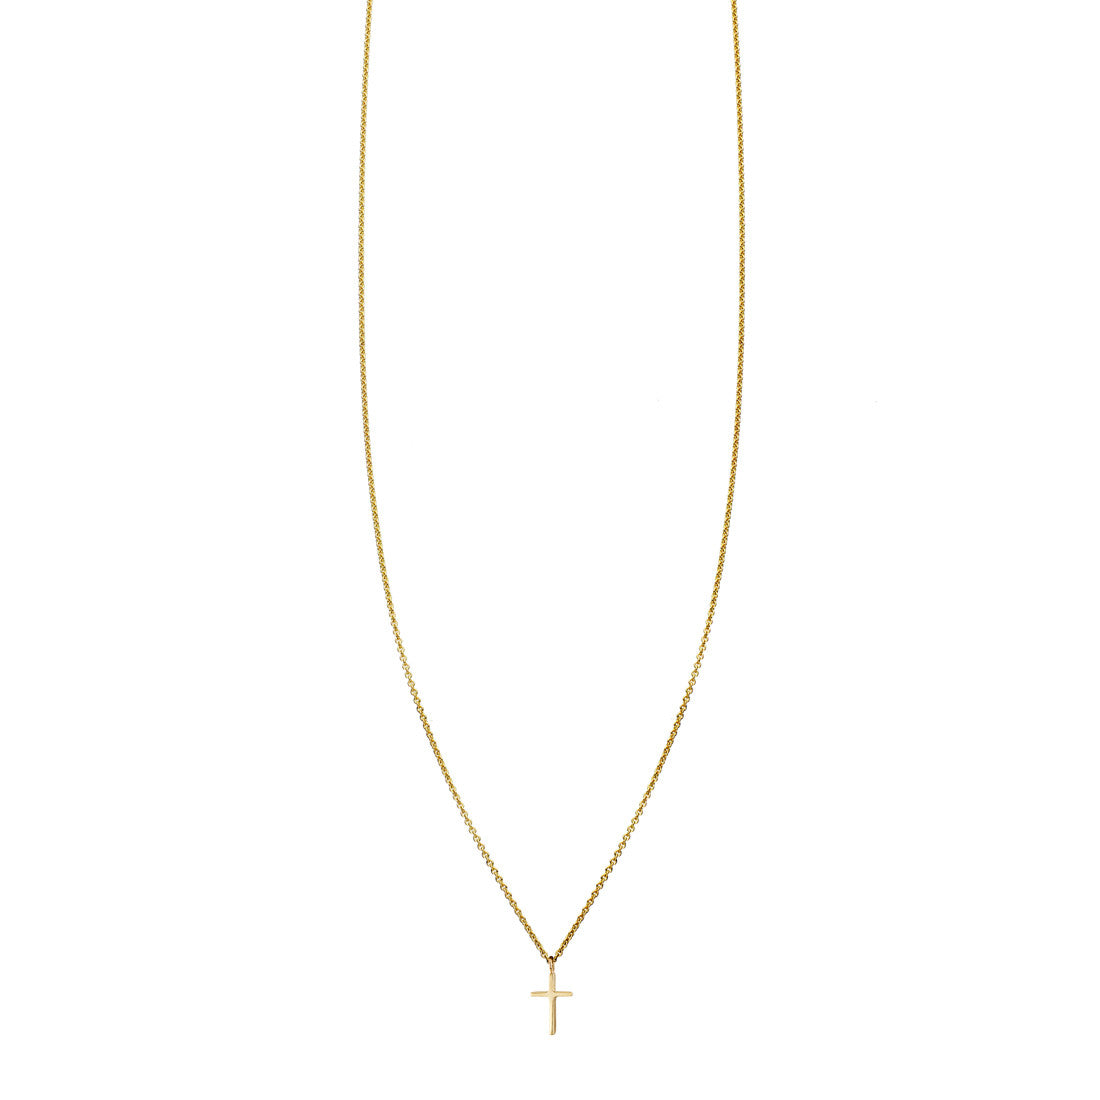 petite cross mini charm exquisite necklace PRN 237 14KY